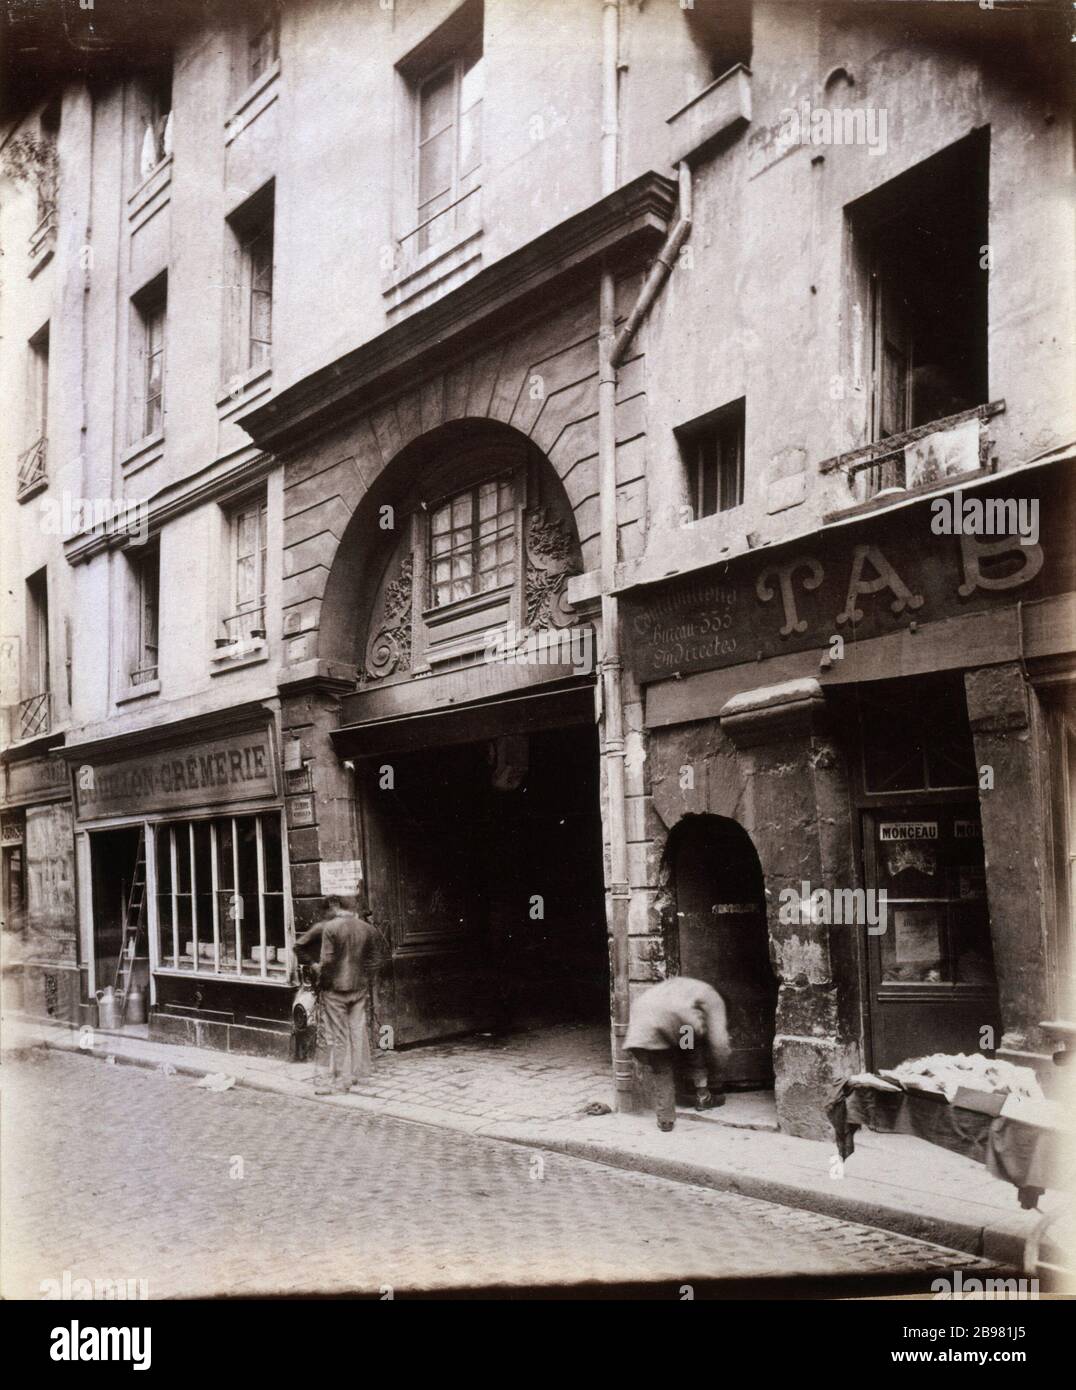 GALANDE STREET, RED CASTLE DEMOLISHED IN 1899 'Rue Galande, le Château Rouge démoli en 1899', Paris (Vème arr.). Photographie d'Eugène Atget (1857-1927). Paris, musée Carnavalet. Stock Photo